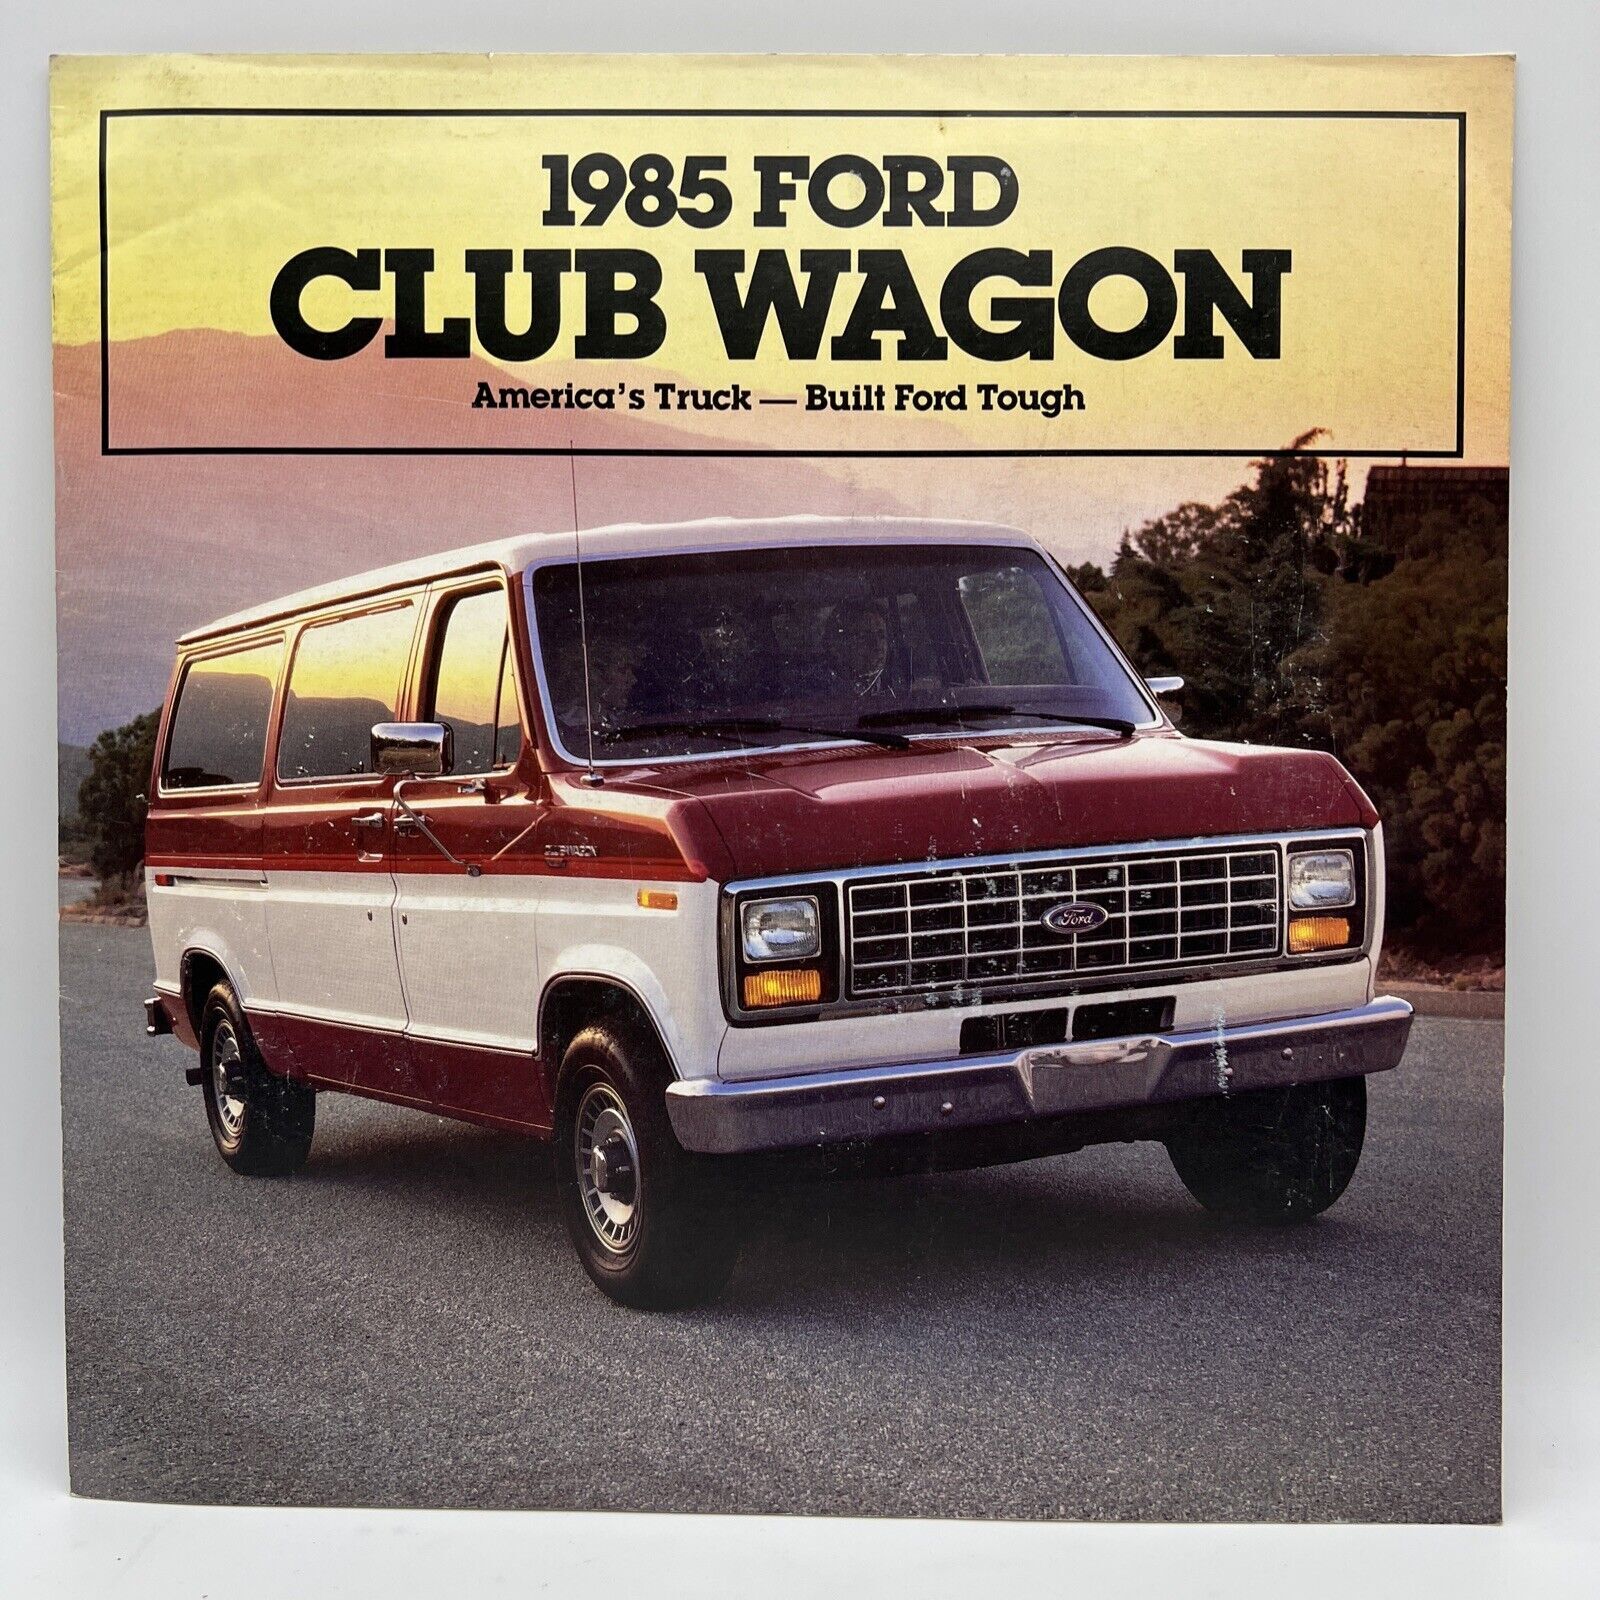 1985 FORD CLUB WAGON VAN Auto Truck Dealer Sales Brochure Options Colors & Specs